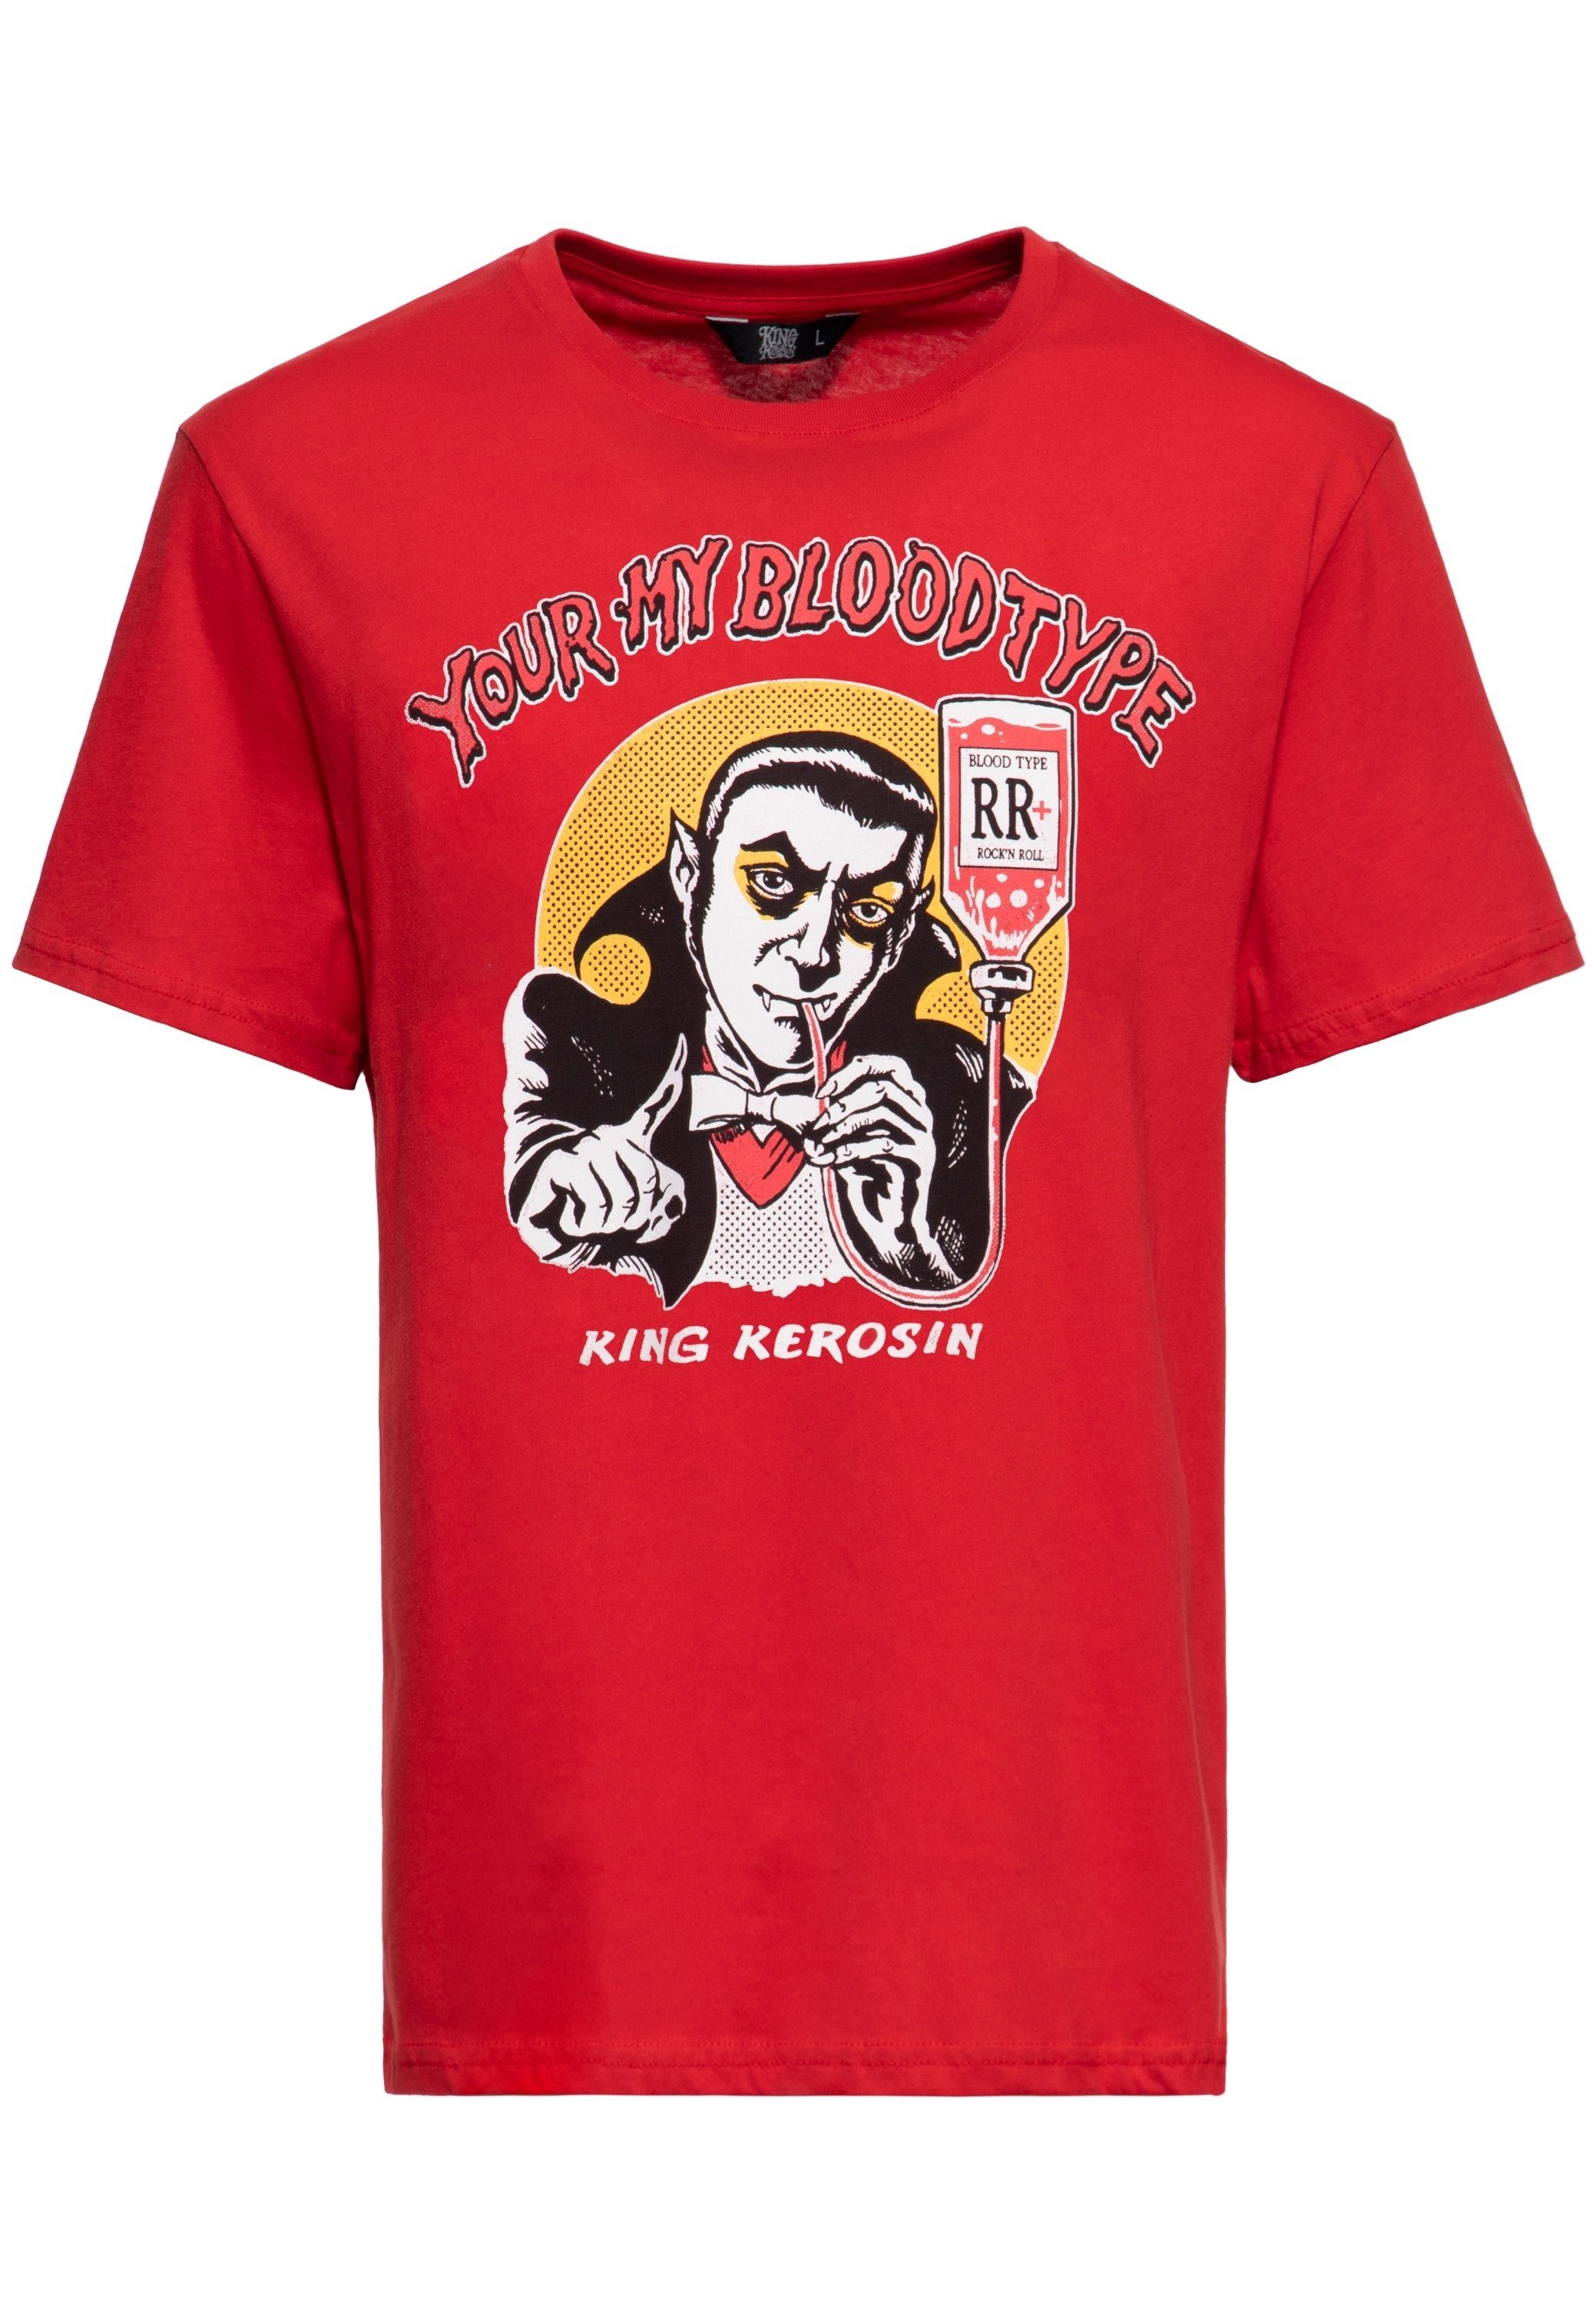 KingKerosin Print-Shirt You're my blood type mit Vampir Artwork im Comic-Stil rot